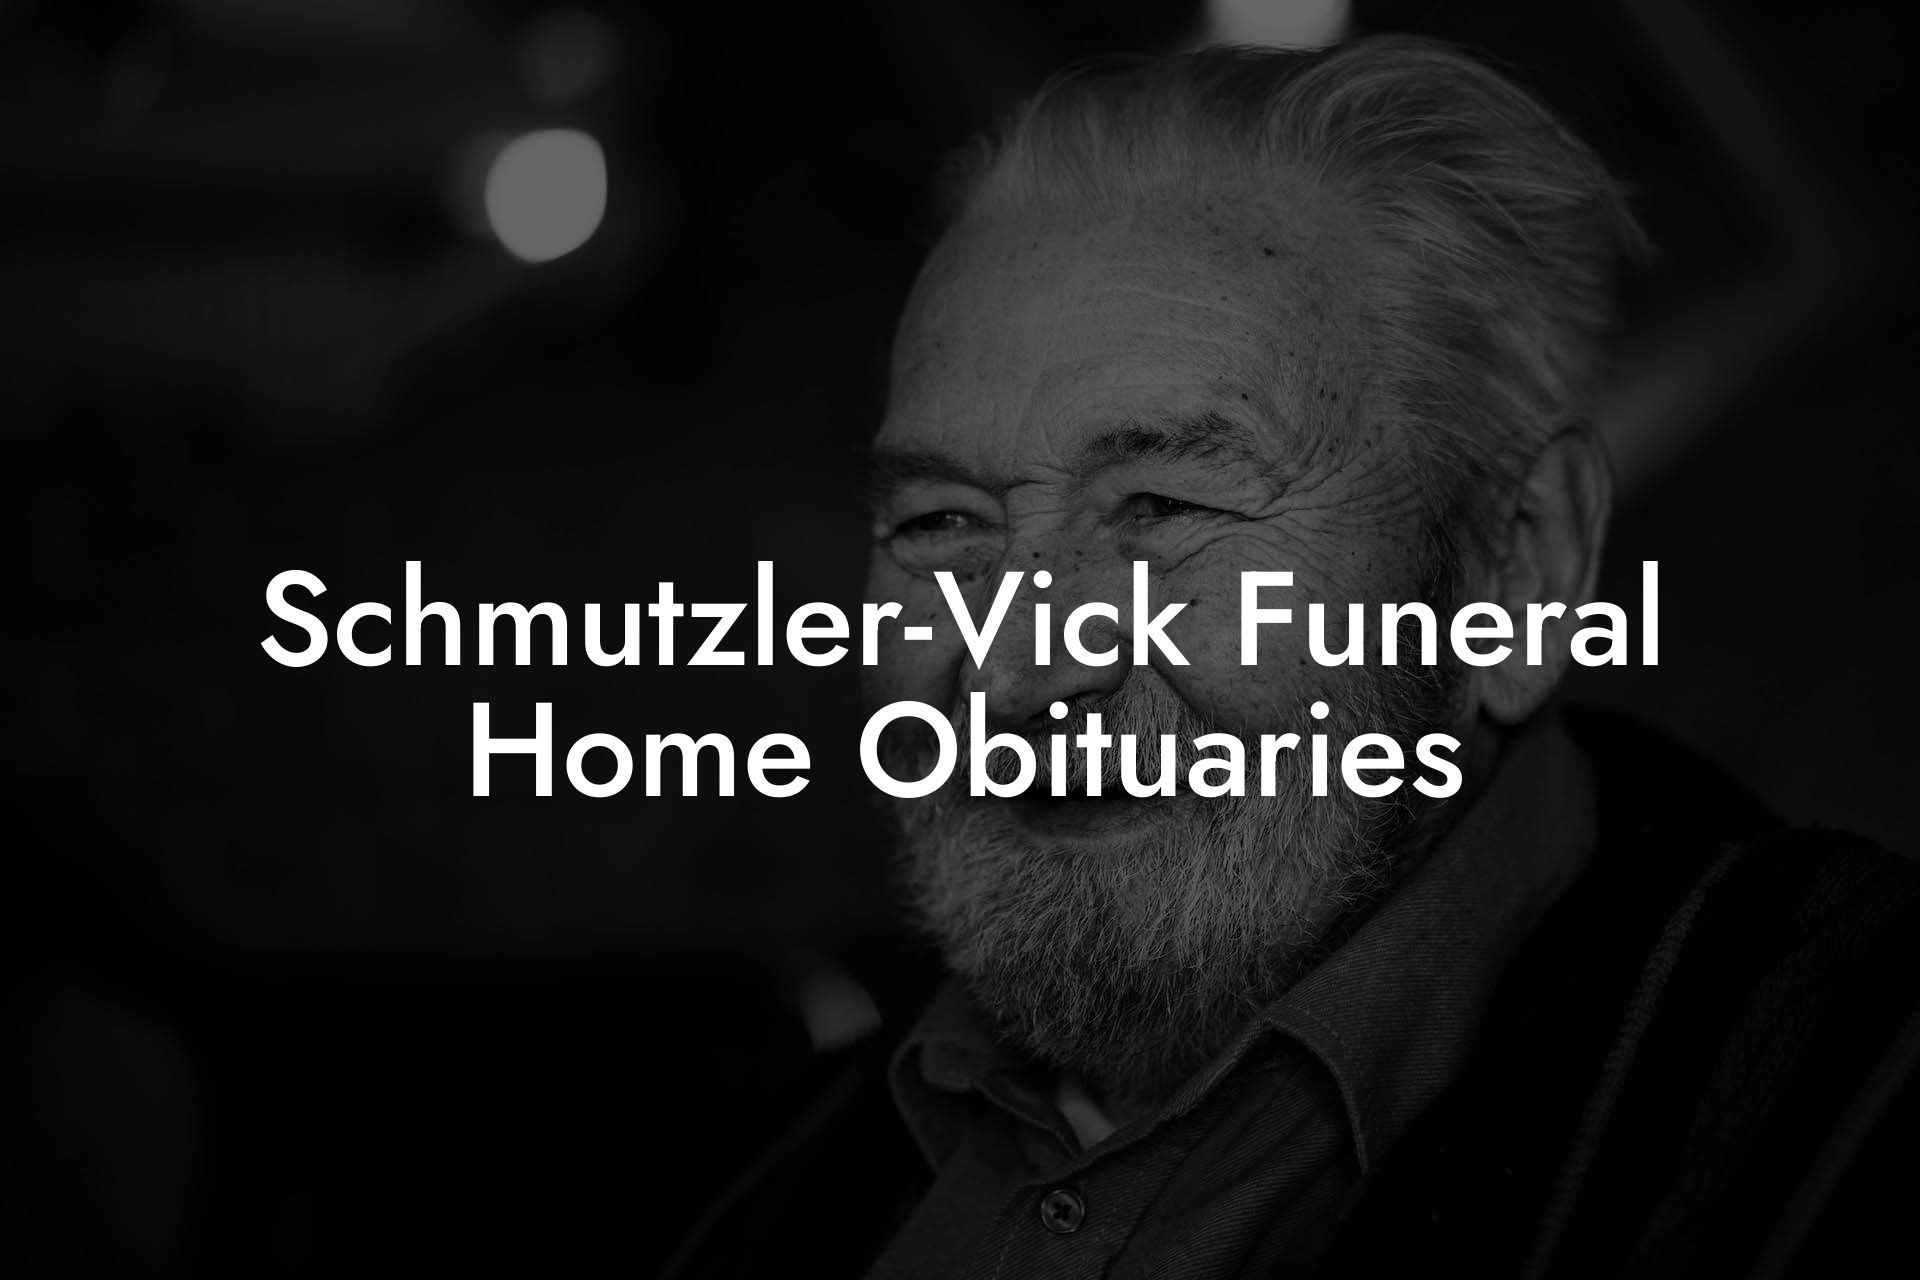 Schmutzler-Vick Funeral Home Obituaries